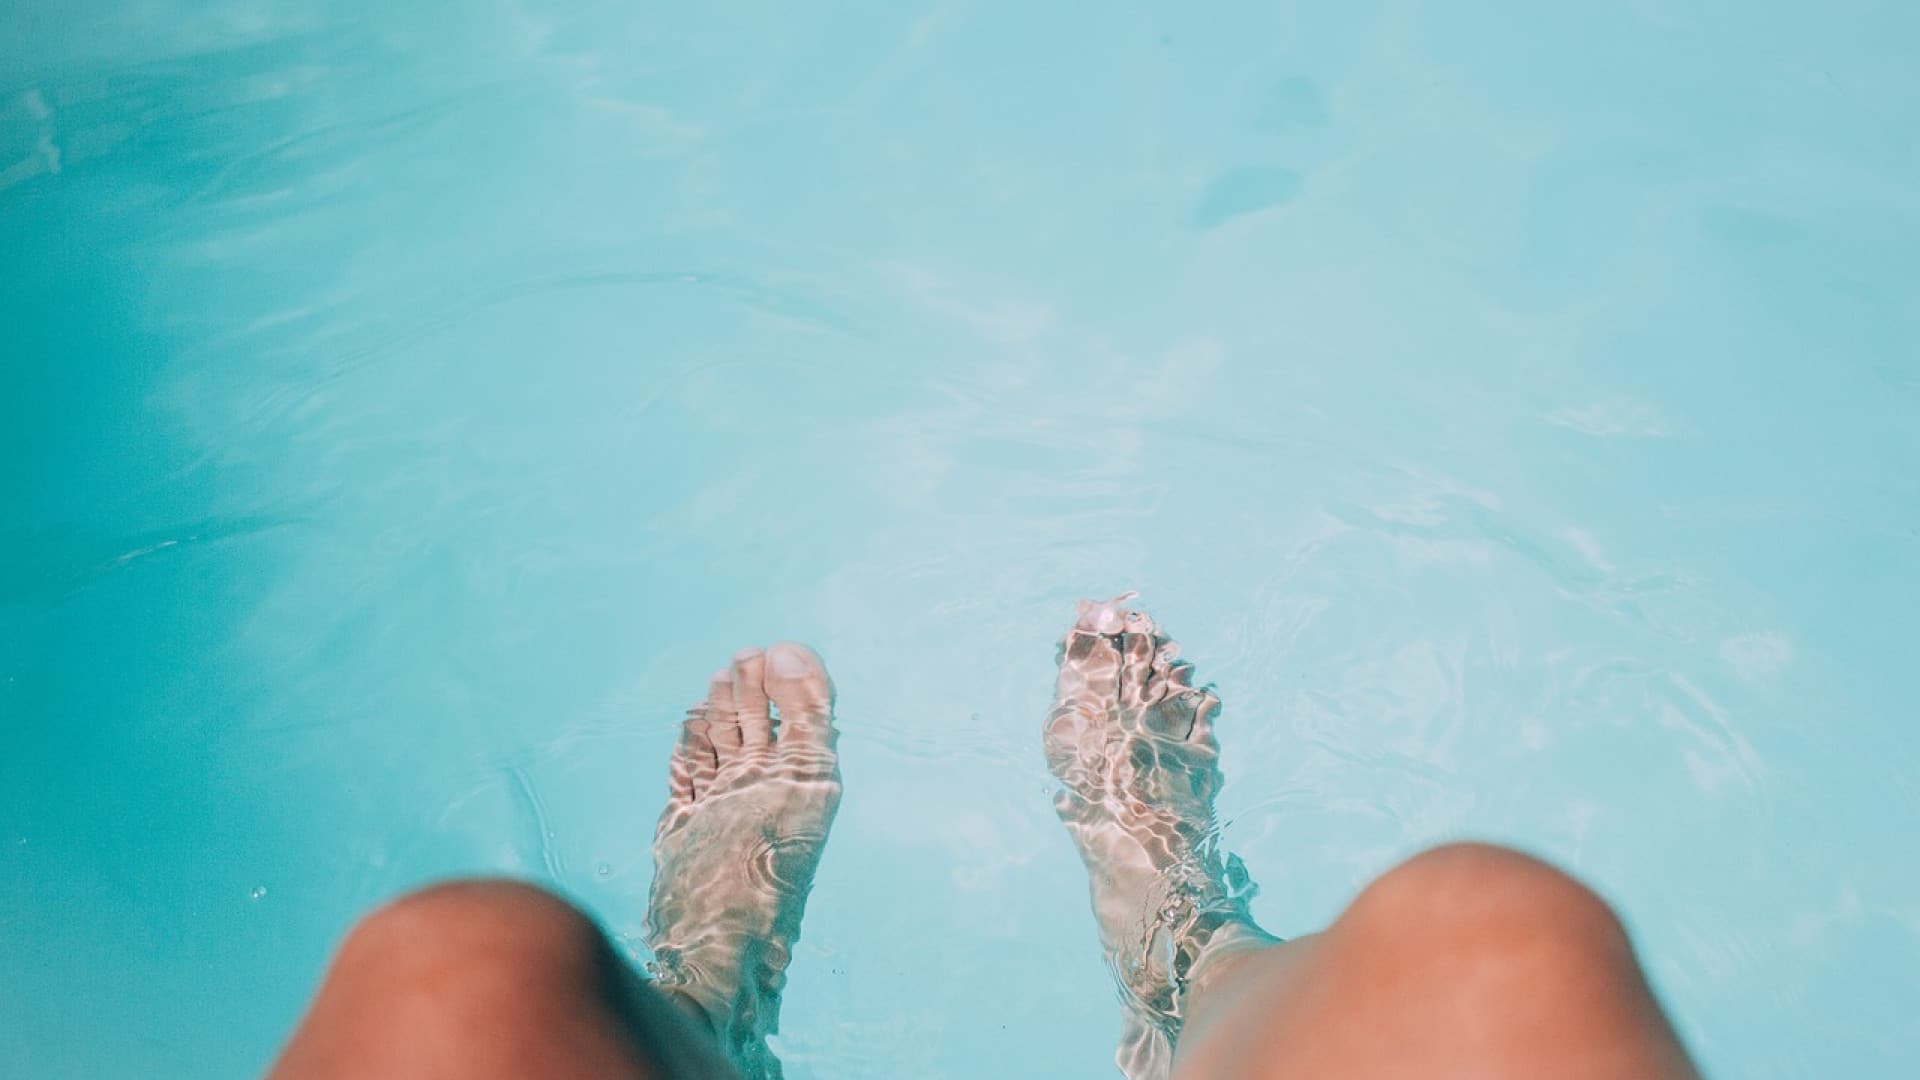 Les pieds hallux valgus de la personne immergés dans l’eau bleue claire de la piscine.